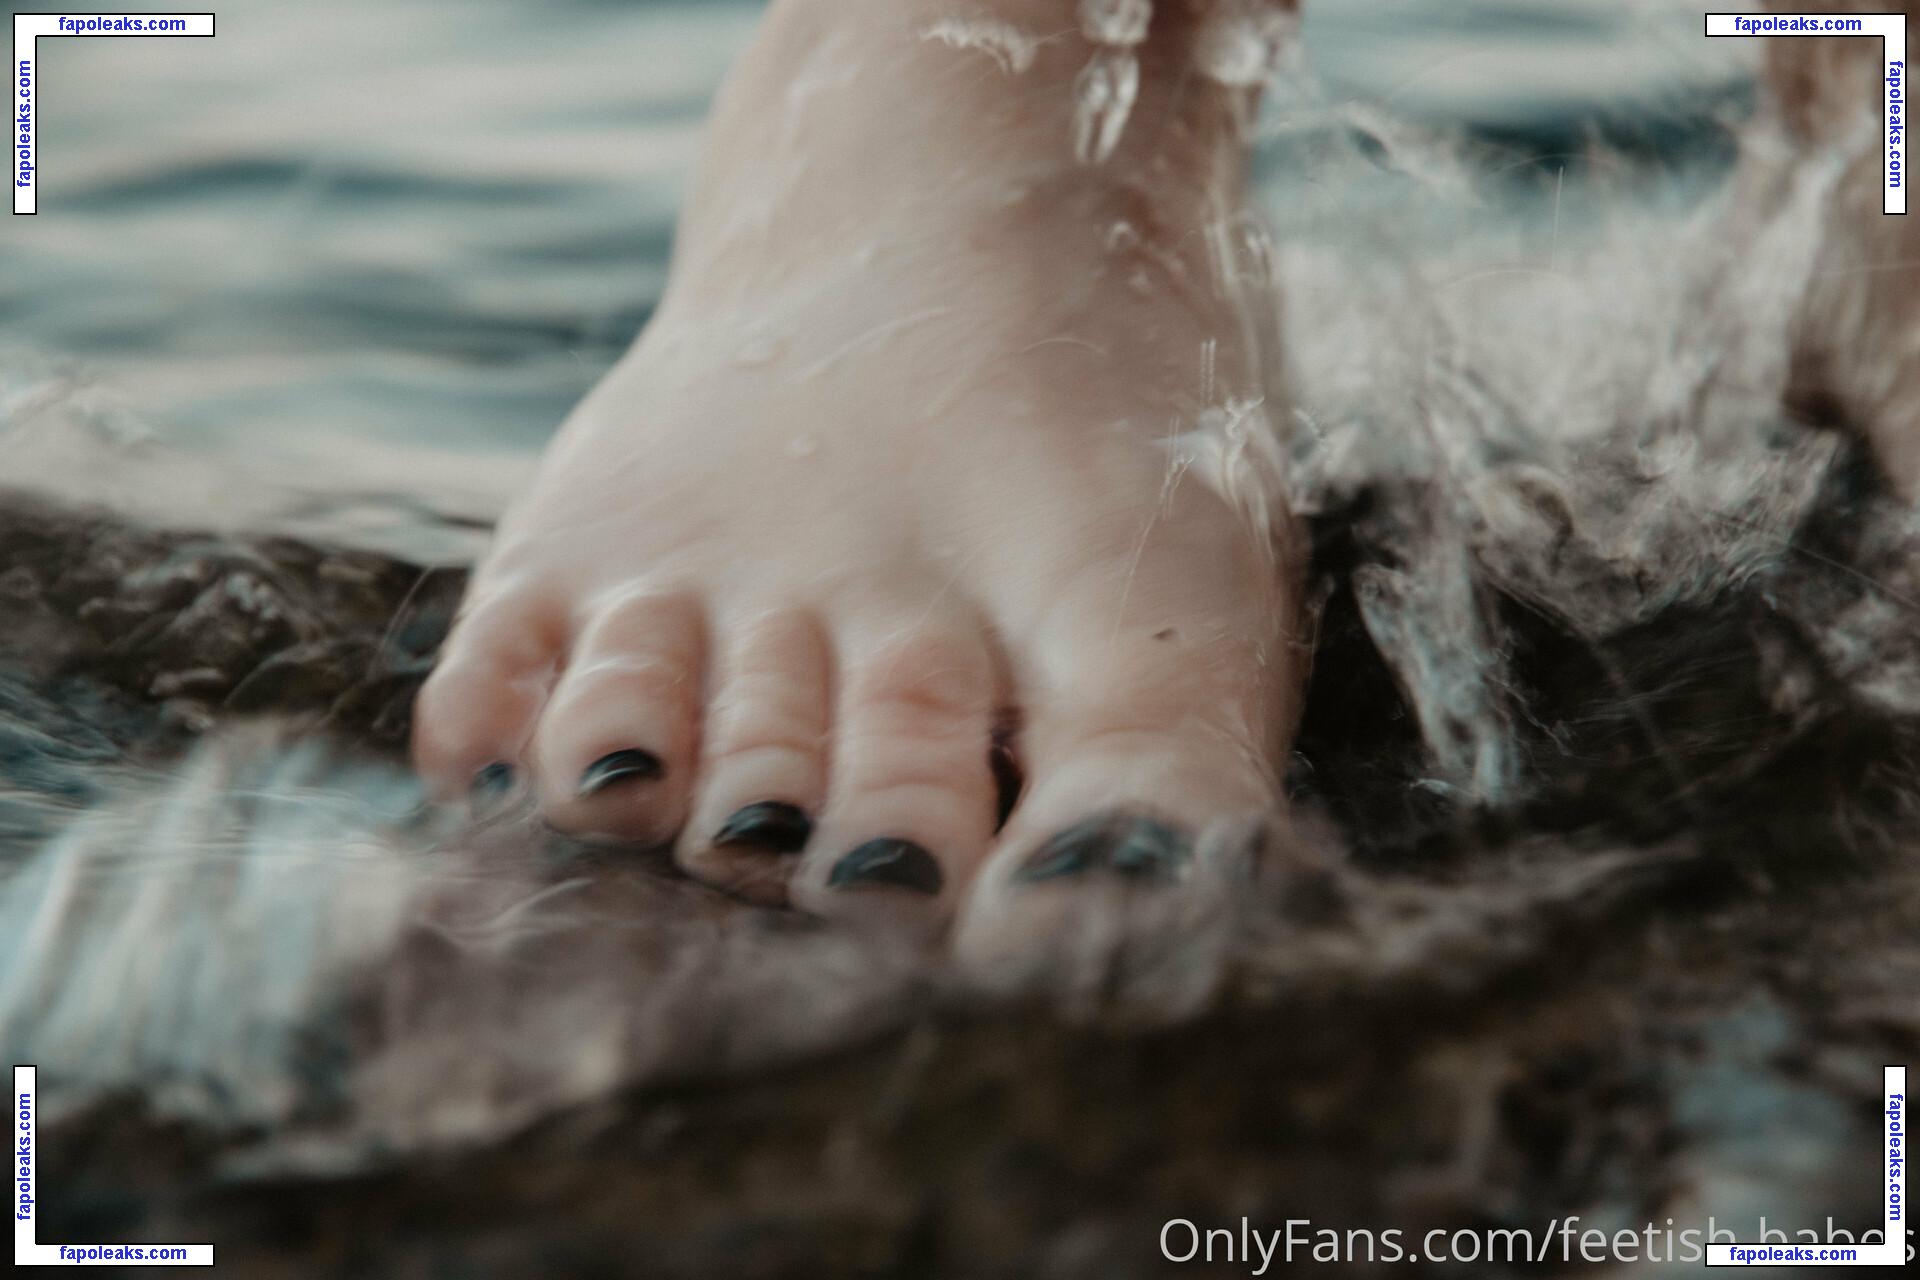 feetish.babes / girlsfootfetish голая фото #0012 с Онлифанс